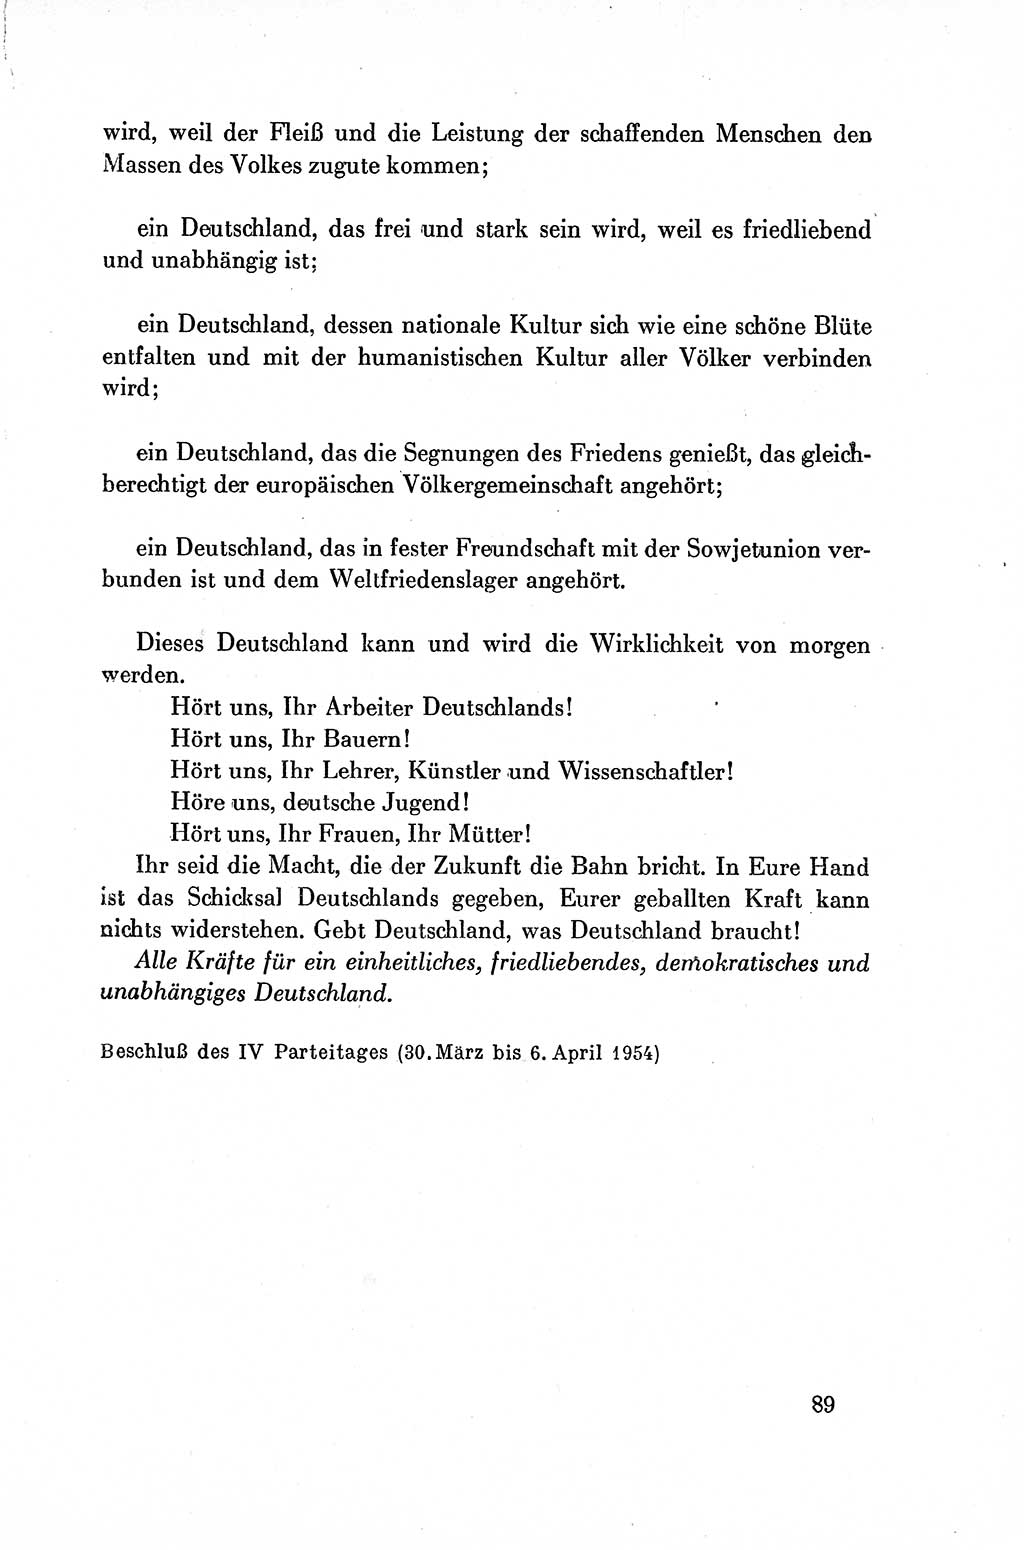 Dokumente der Sozialistischen Einheitspartei Deutschlands (SED) [Deutsche Demokratische Republik (DDR)] 1954-1955, Seite 89 (Dok. SED DDR 1954-1955, S. 89)